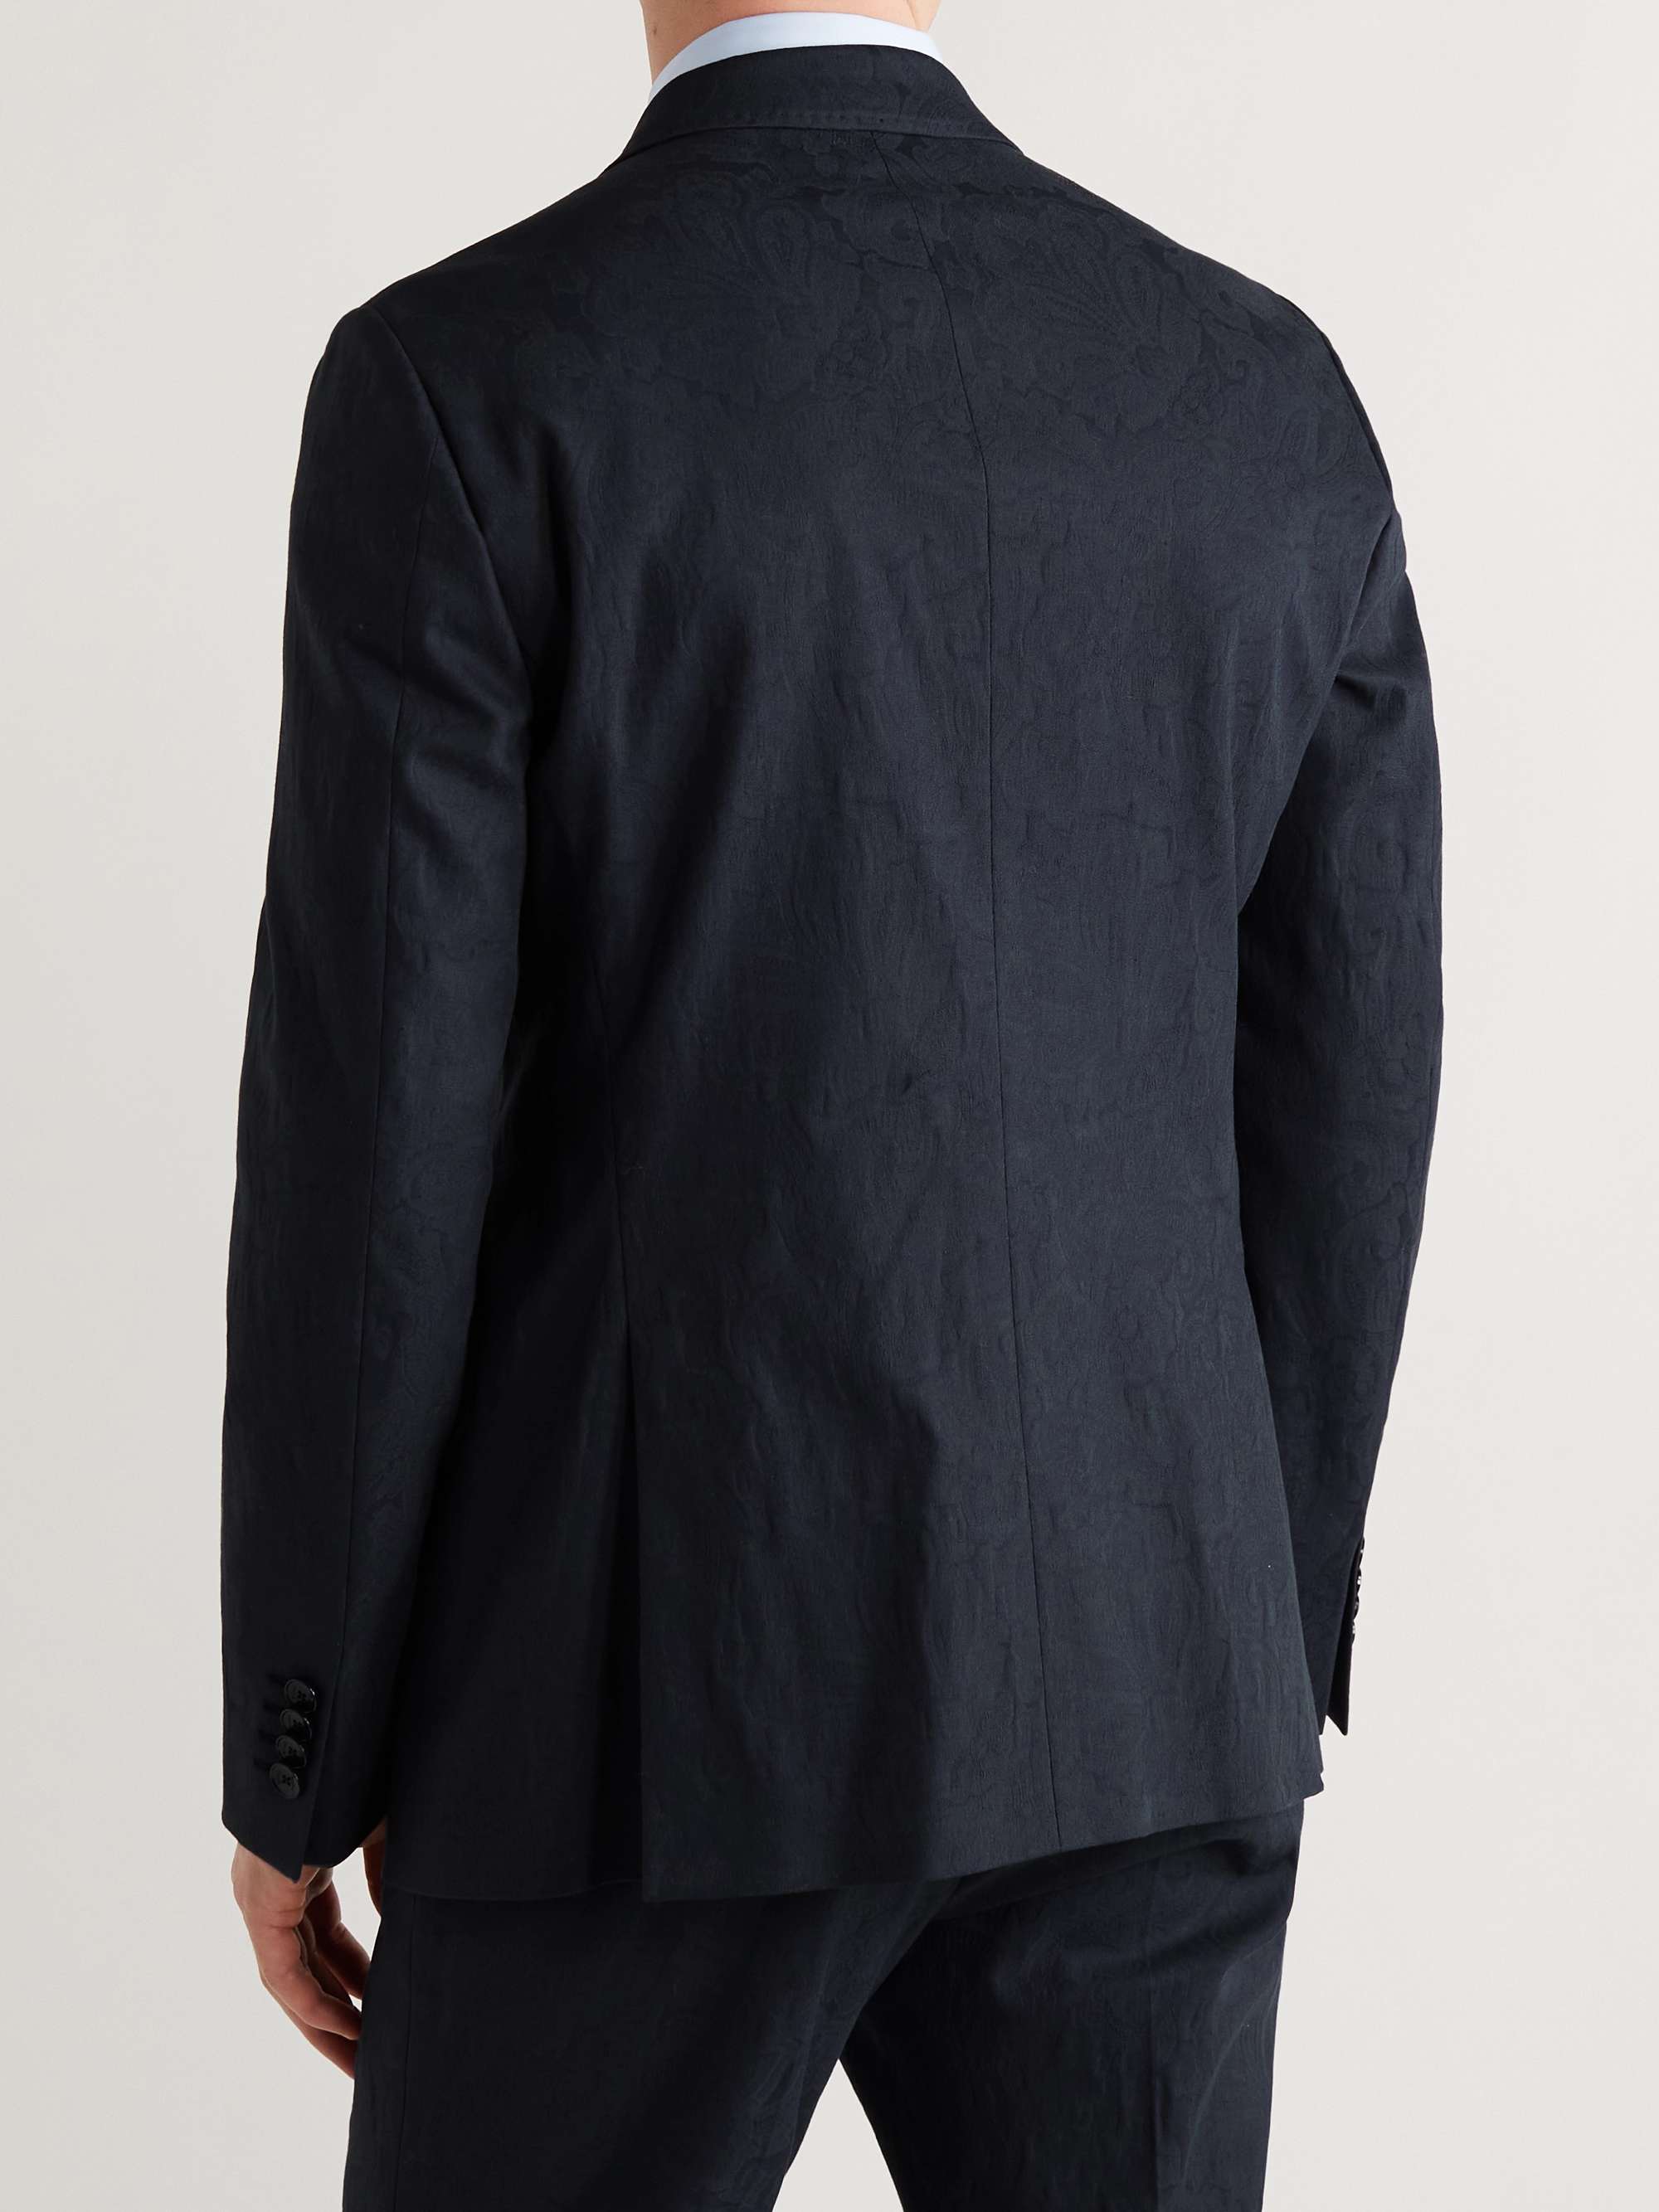 ETRO Slim-Fit Cotton-Blend Jacquard Suit Jacket